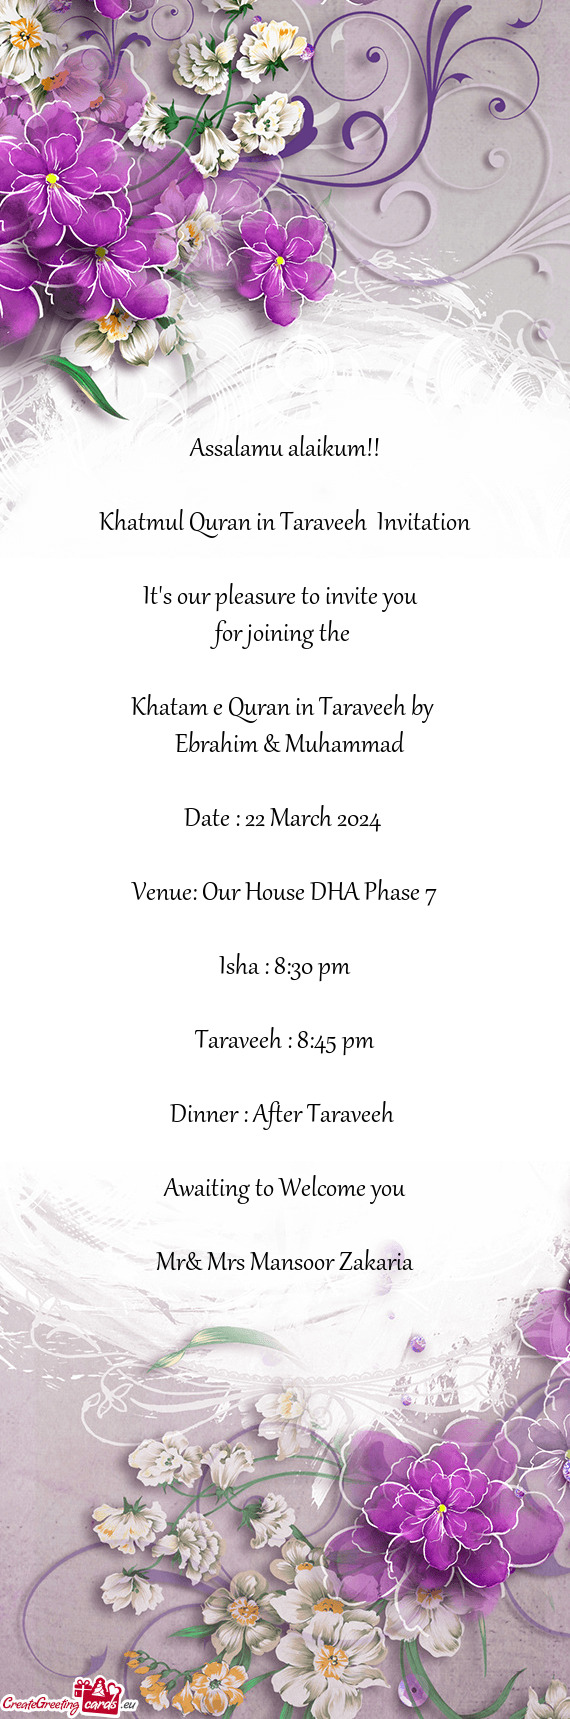 Khatmul Quran in Taraveeh Invitation